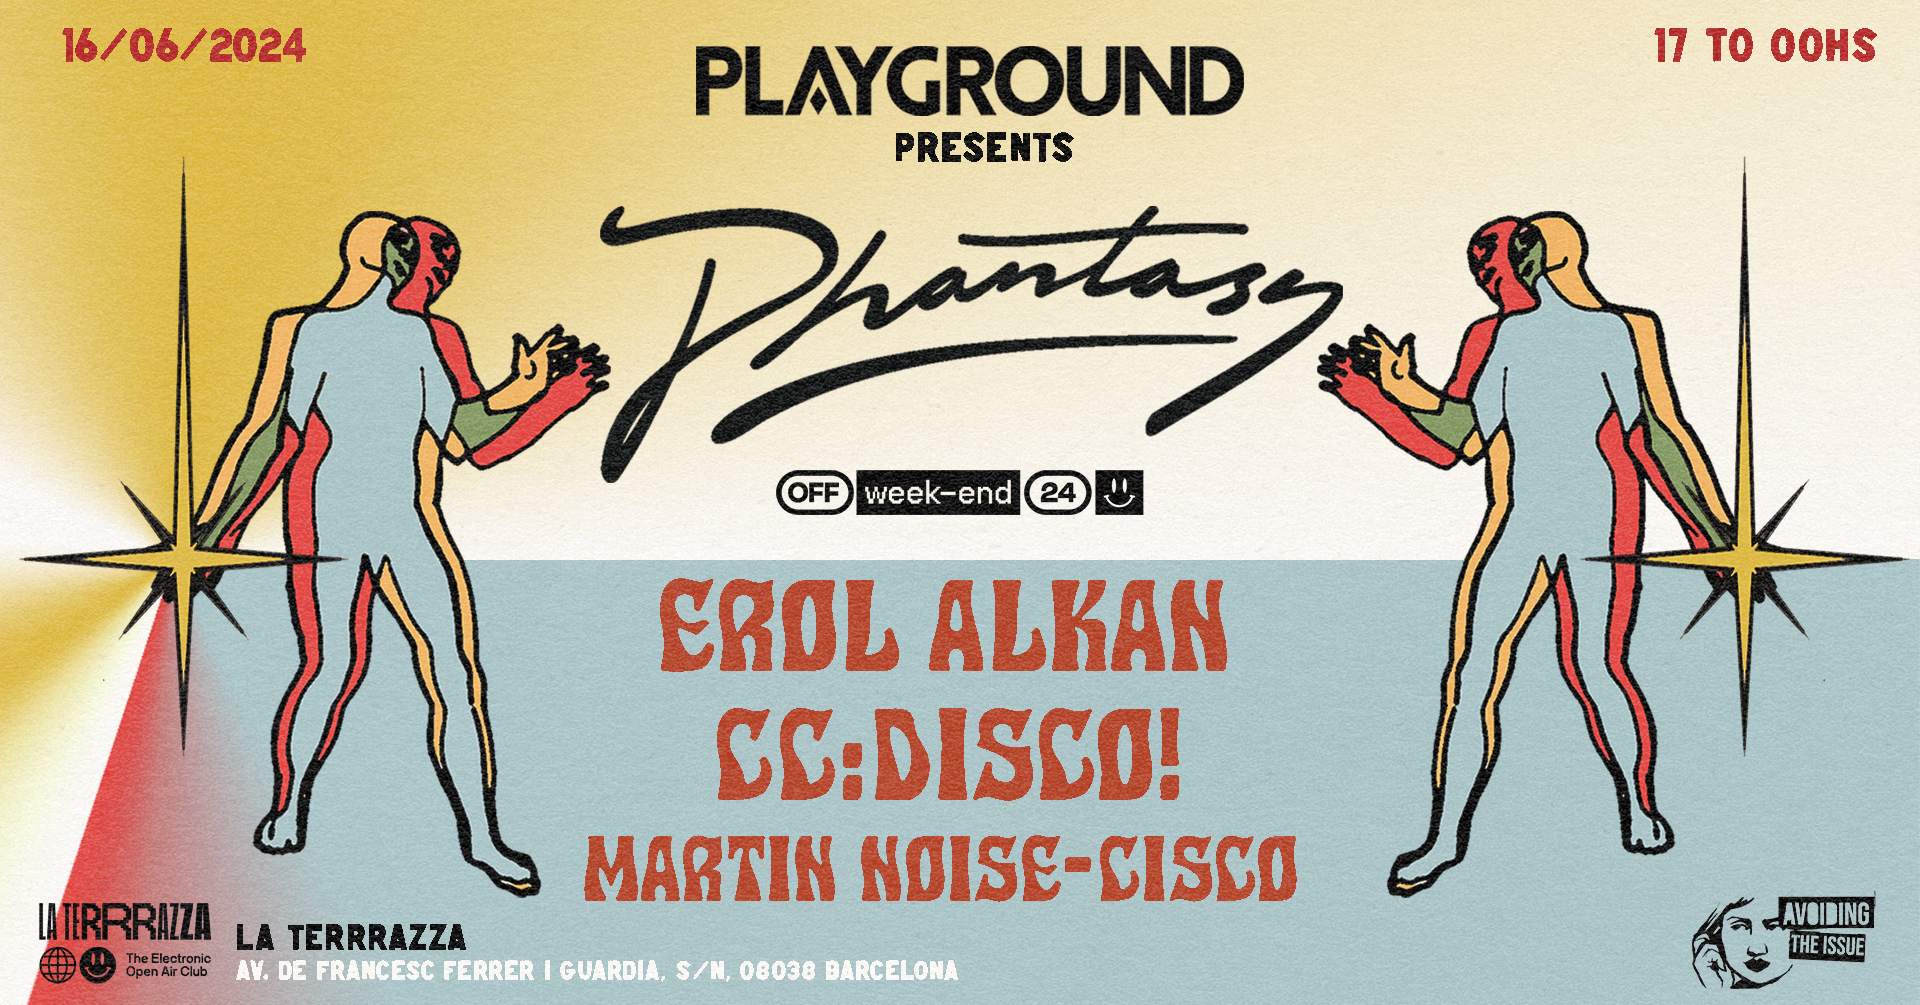 PLAYGROUND pres. PHANTASY with Erol Alkan + CC:DISCO! - Off-Week-end 2024 - Página frontal